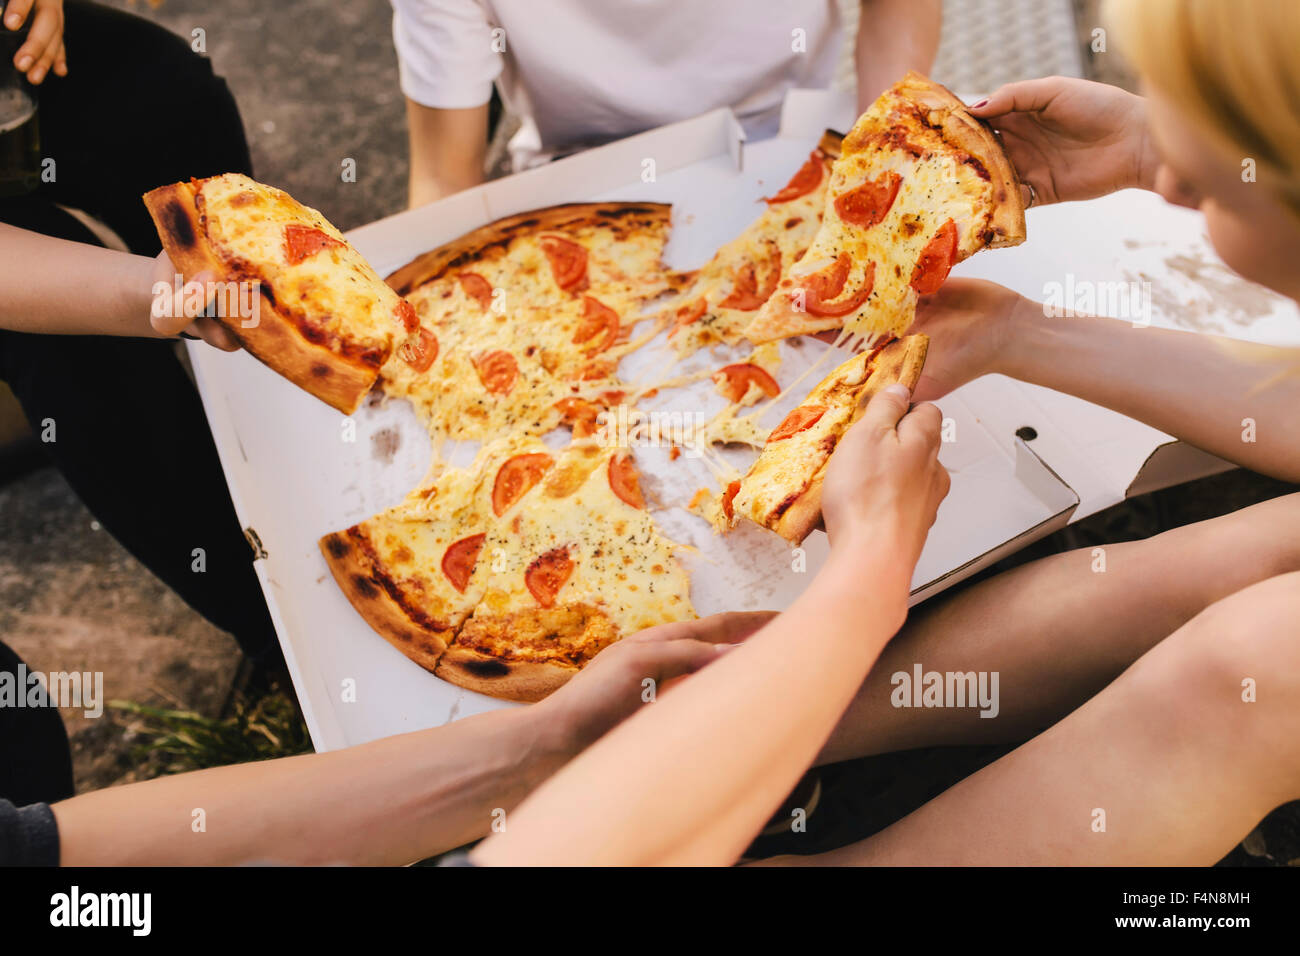 Les amis partageant une pizza Banque D'Images